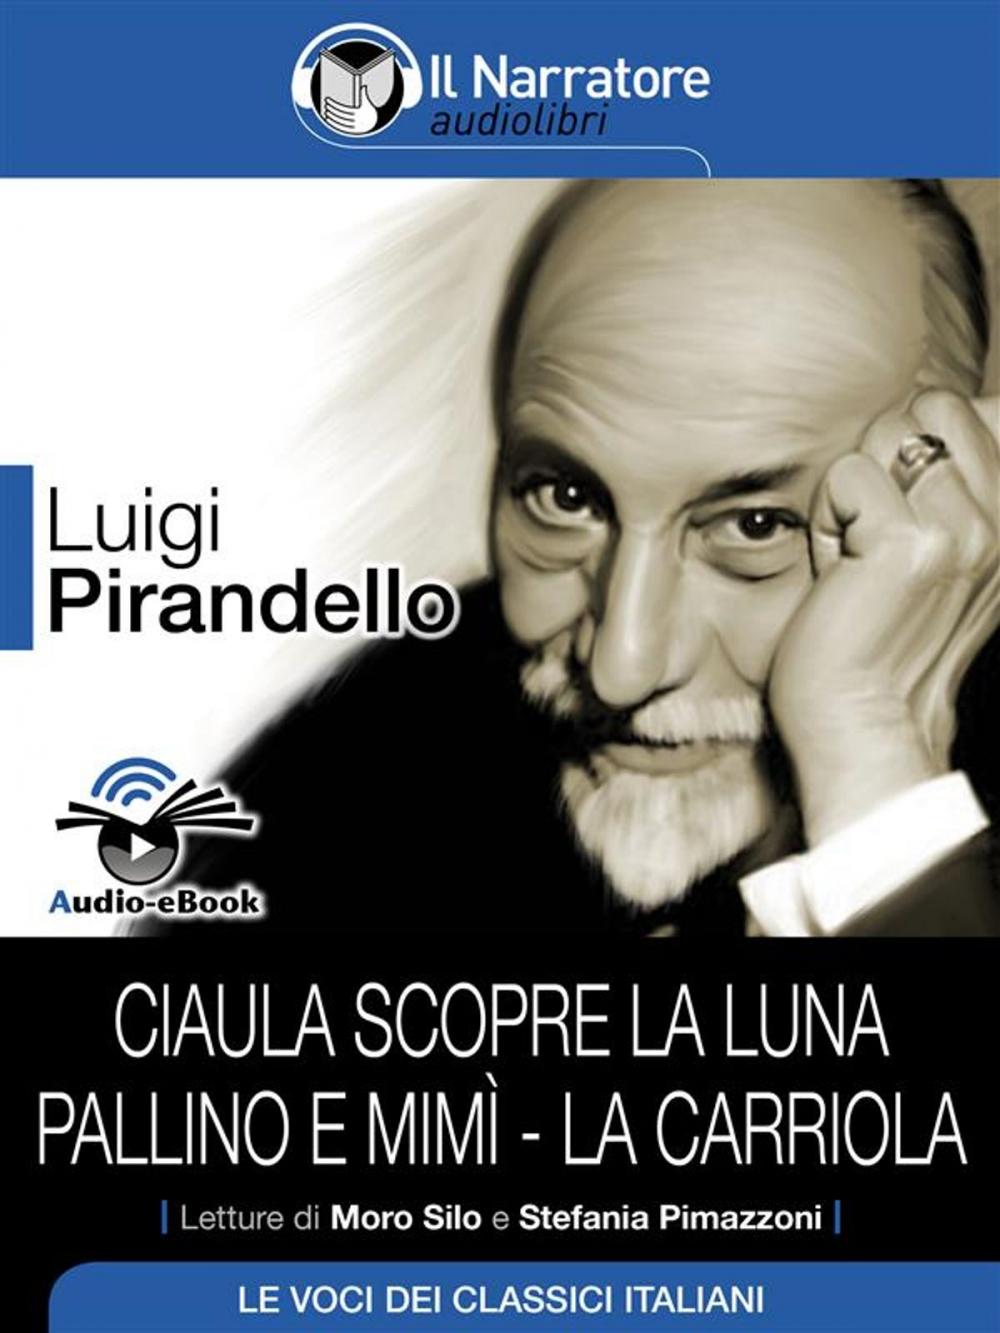 Big bigCover of Ciaula scopre la luna - Pallino e Mimì - La carriola (Audio-eBook)